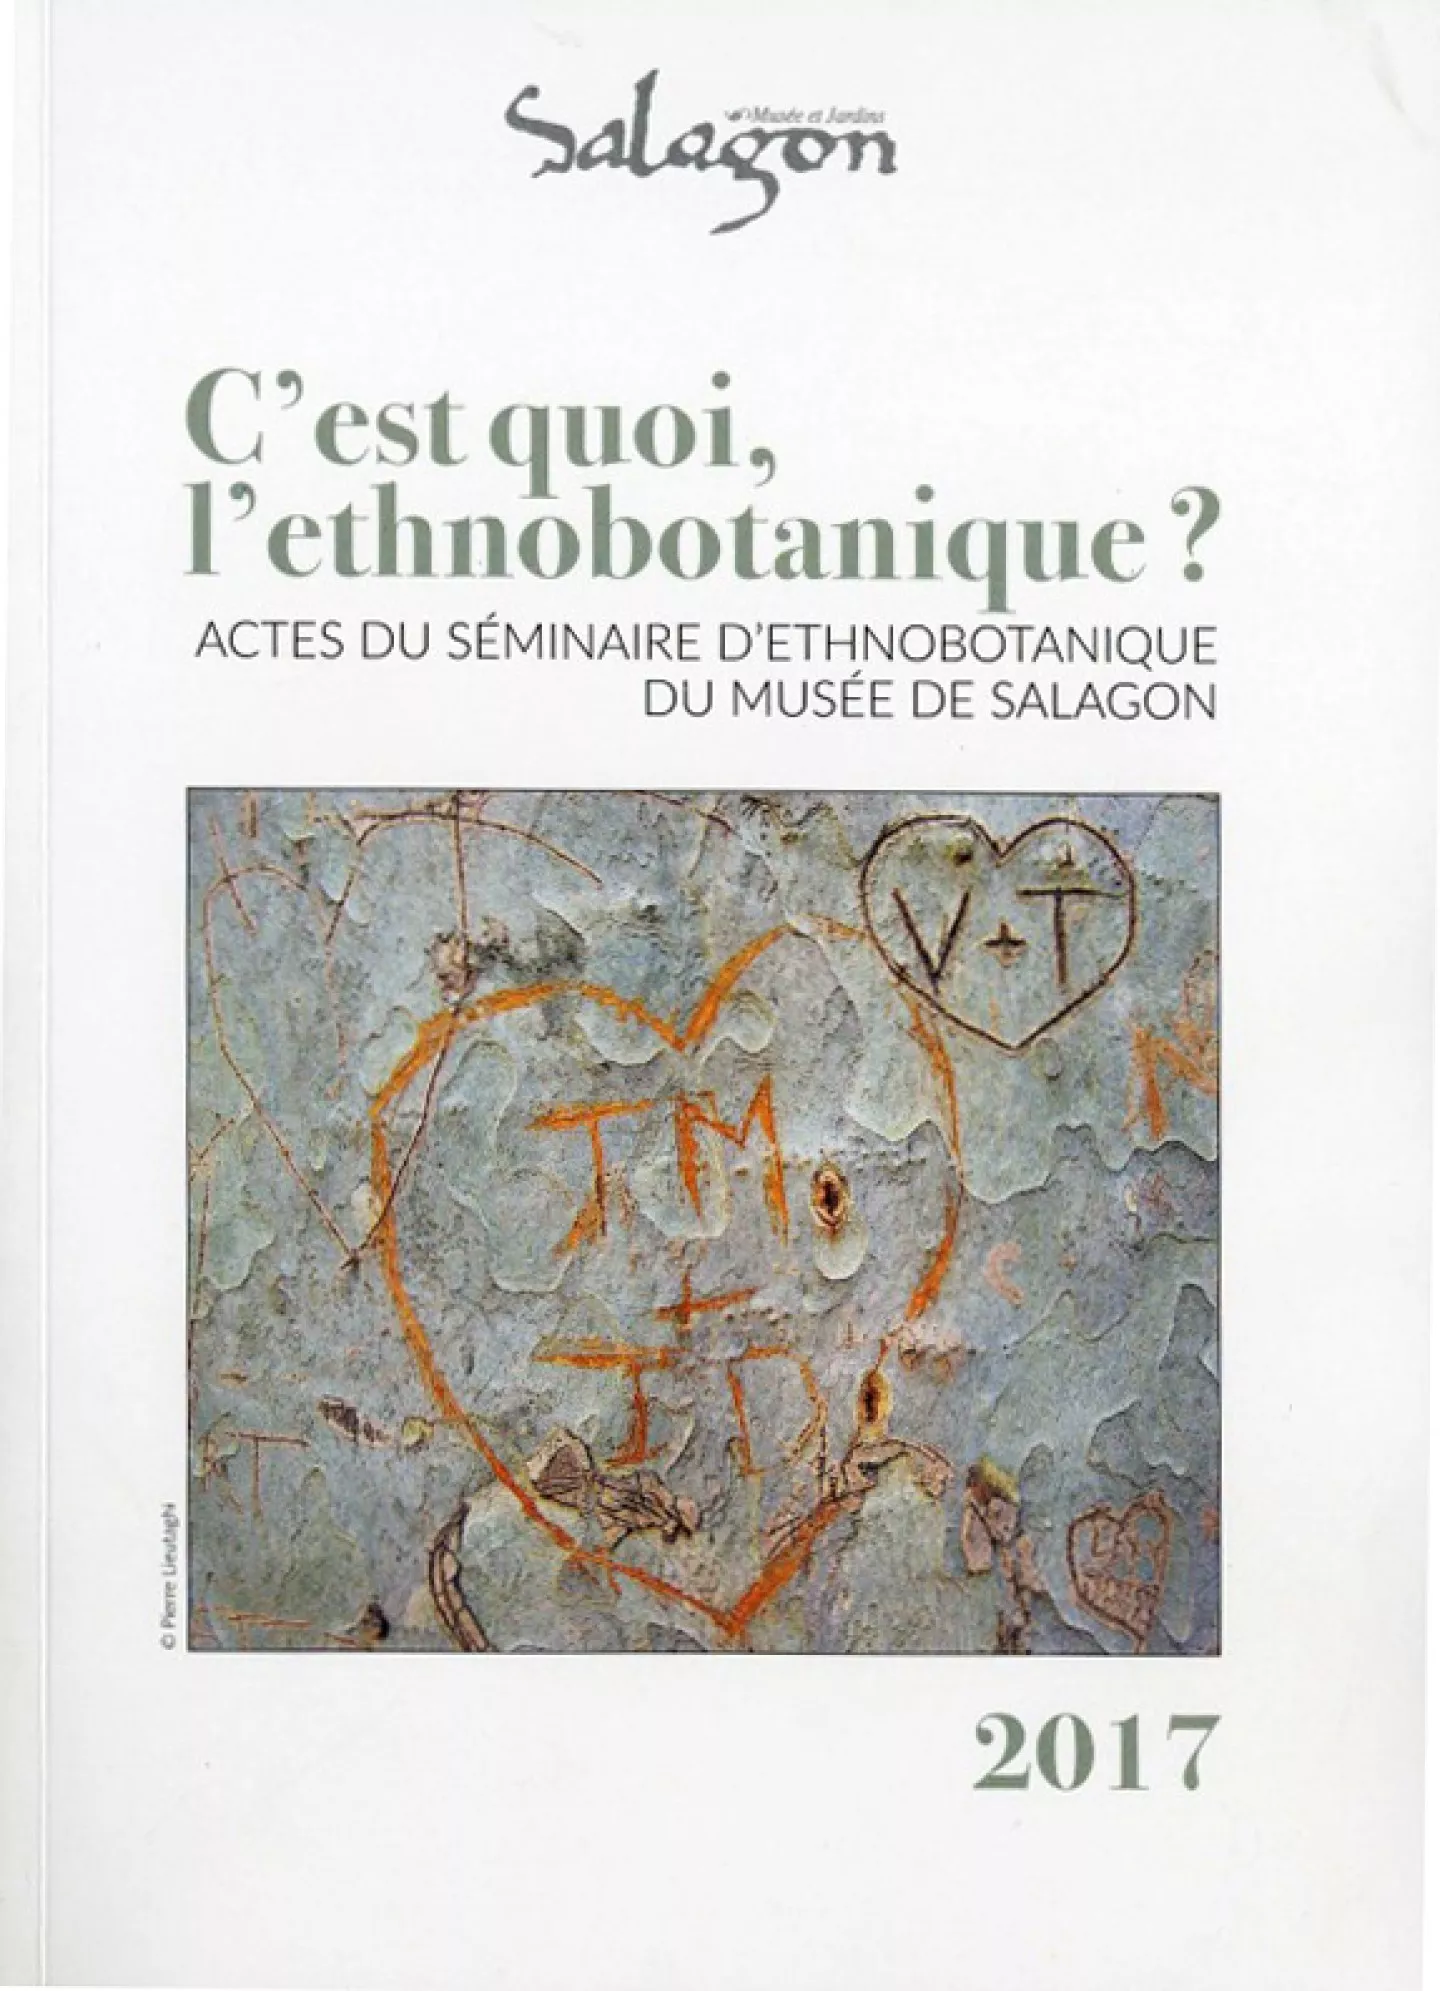 C'est quoi l'ethnobotanique ? Actes du séminaire d’ethnobotanique de Salagon, ouvrage proposé par le musée de Salagon à Mane.